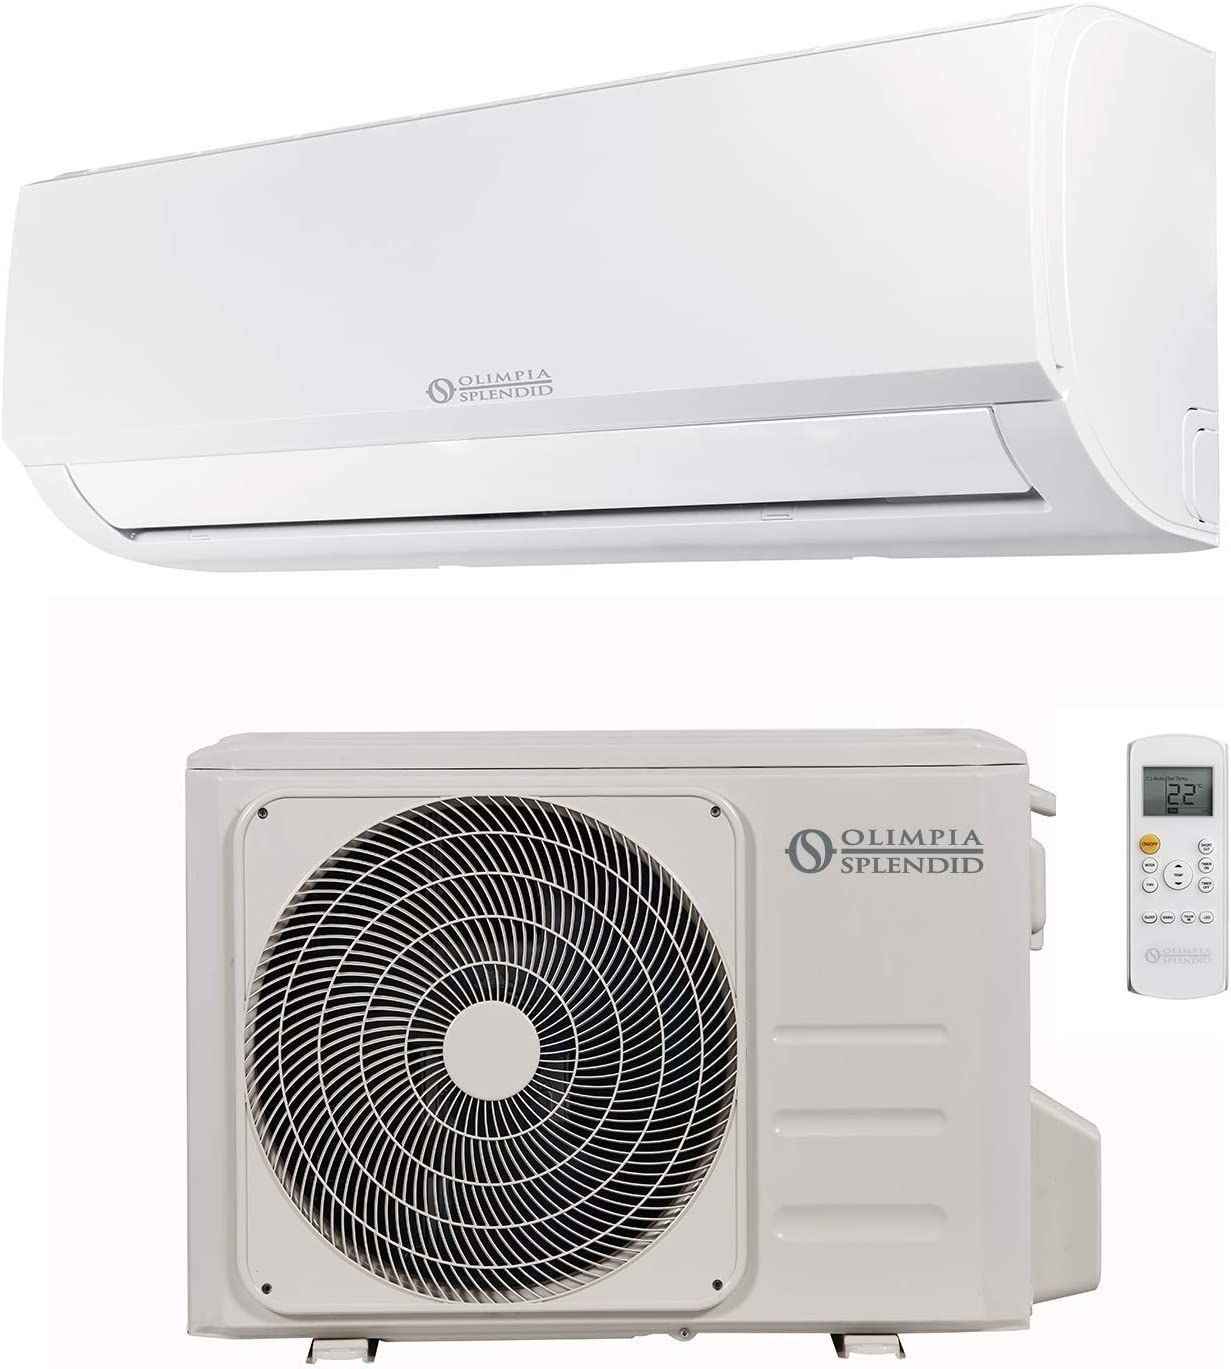 Optimisez votre consommation d'énergie grâce aux réglages de température idéaux pour votre climatiseur